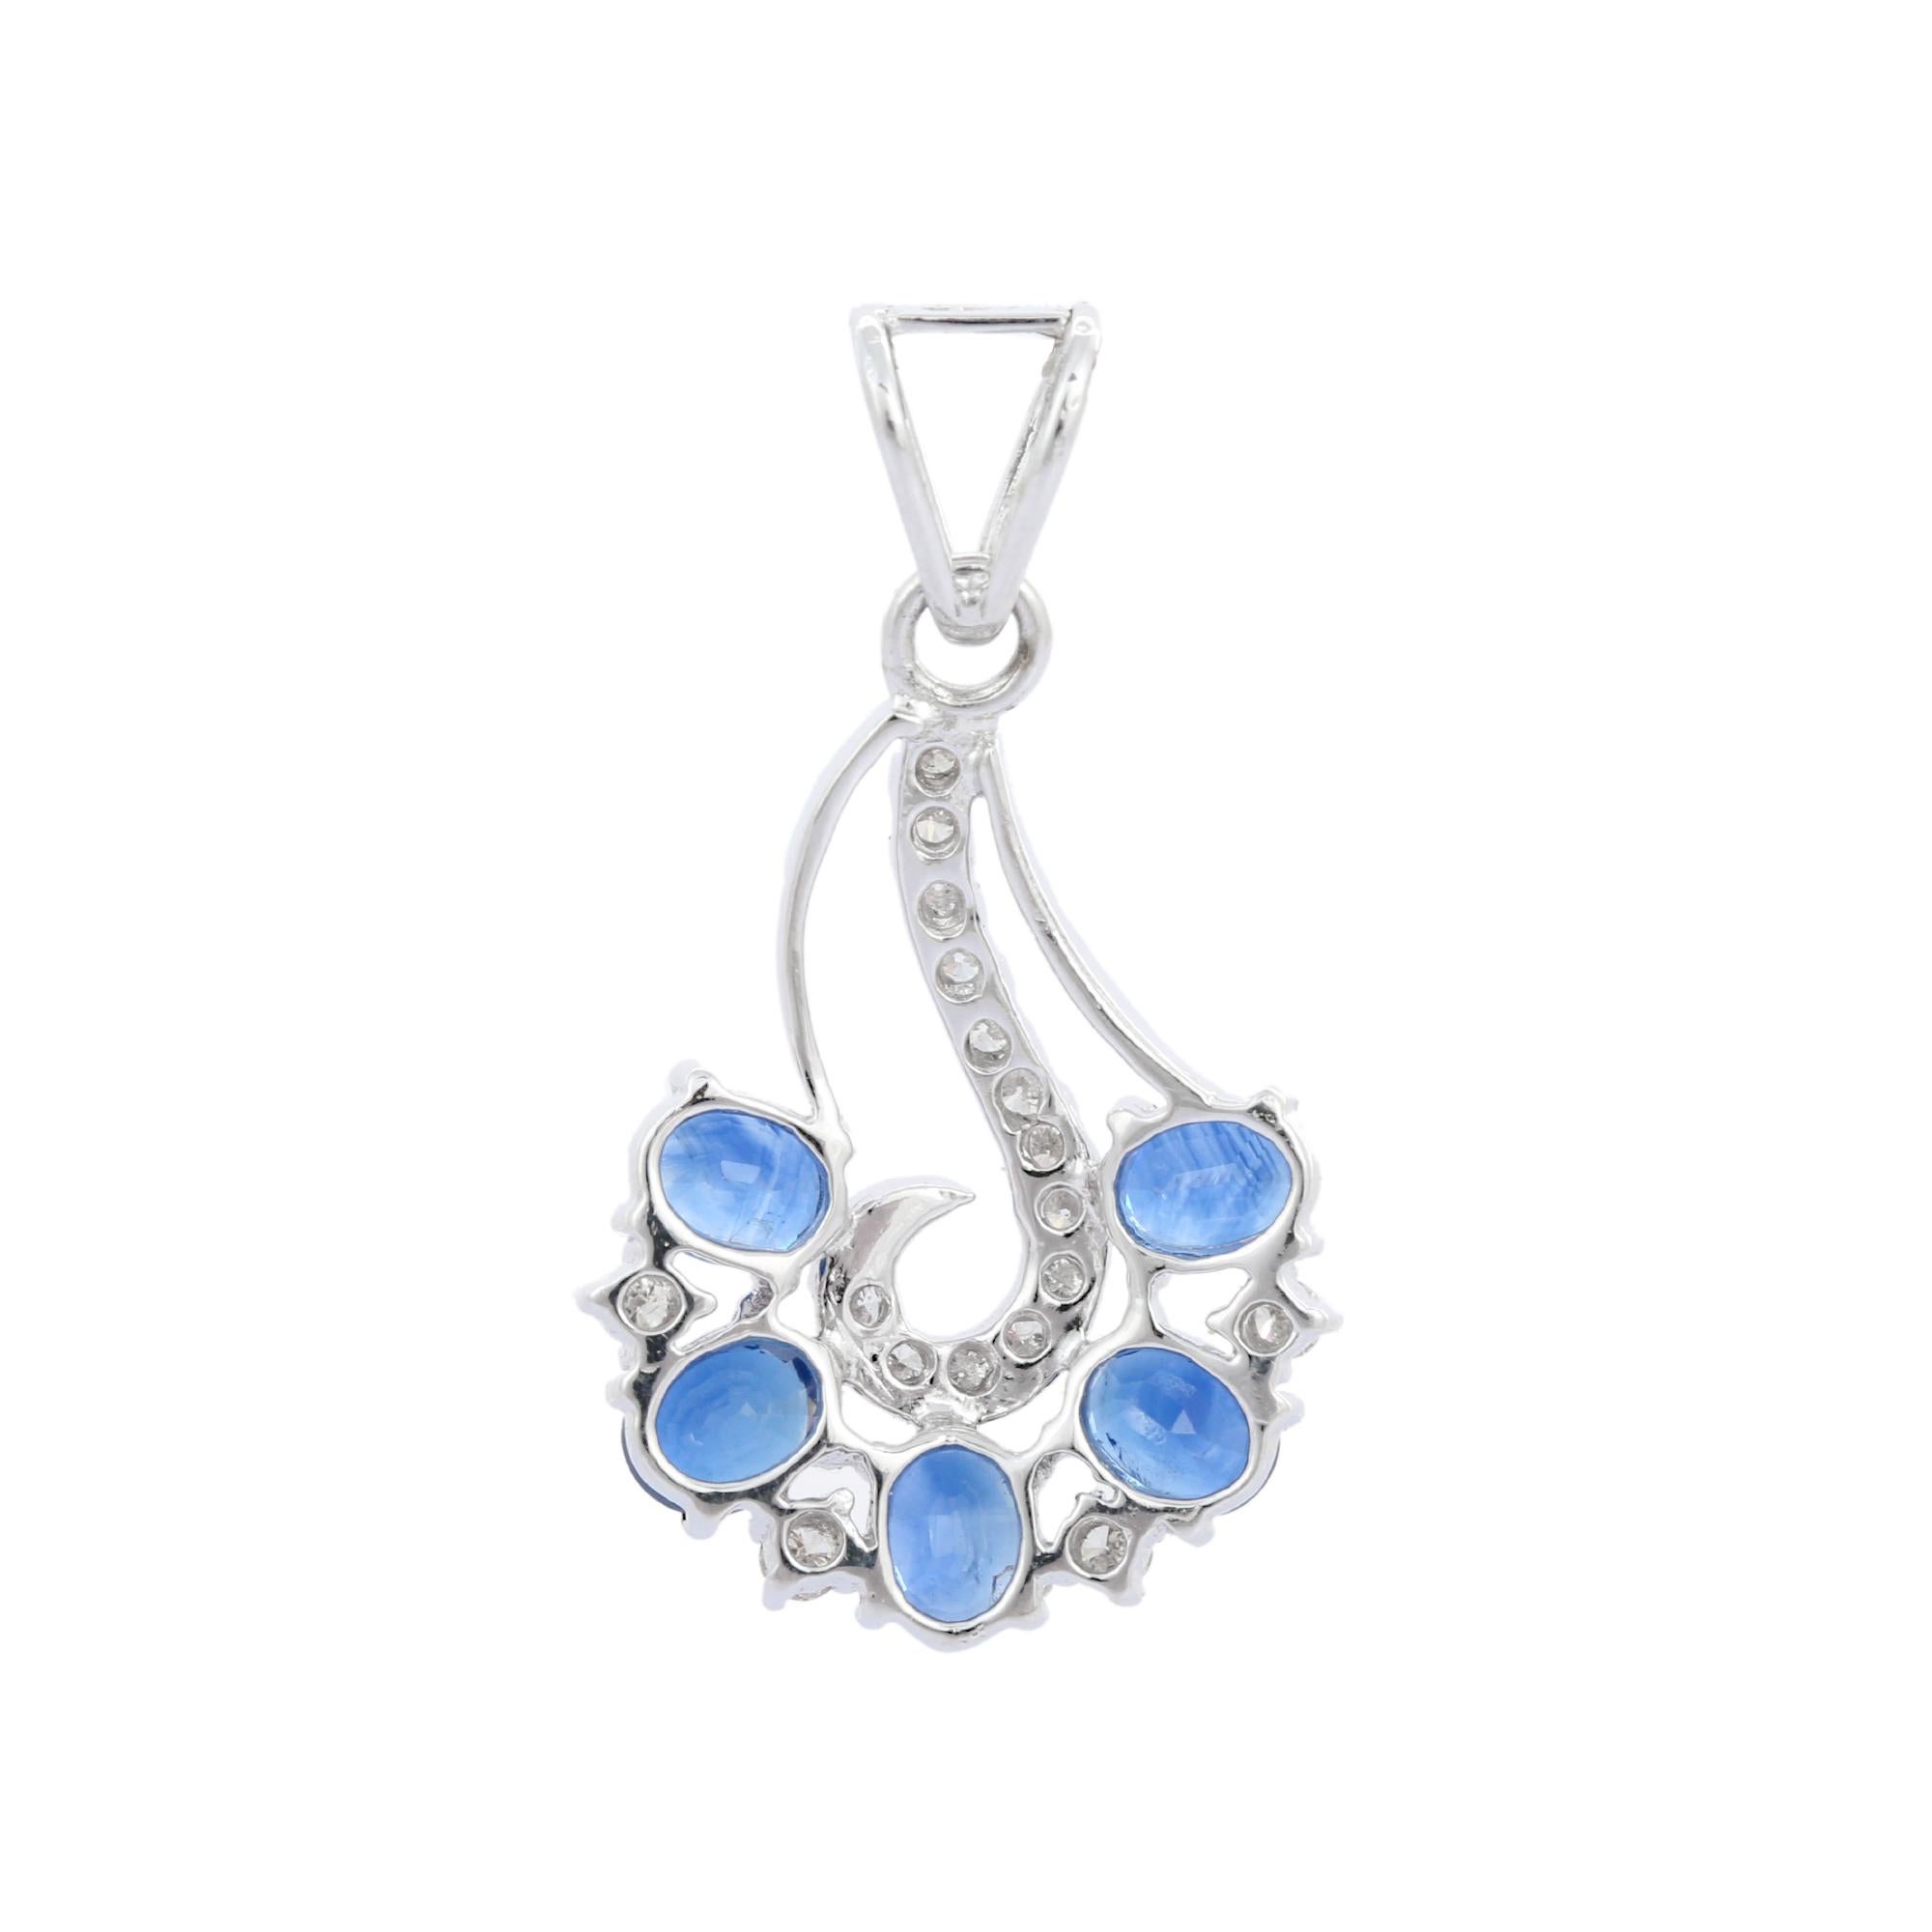 Romantic Art Nouveau 2.42 ct Blue Sapphire Diamond Pendant in 18K White Gold For Sale